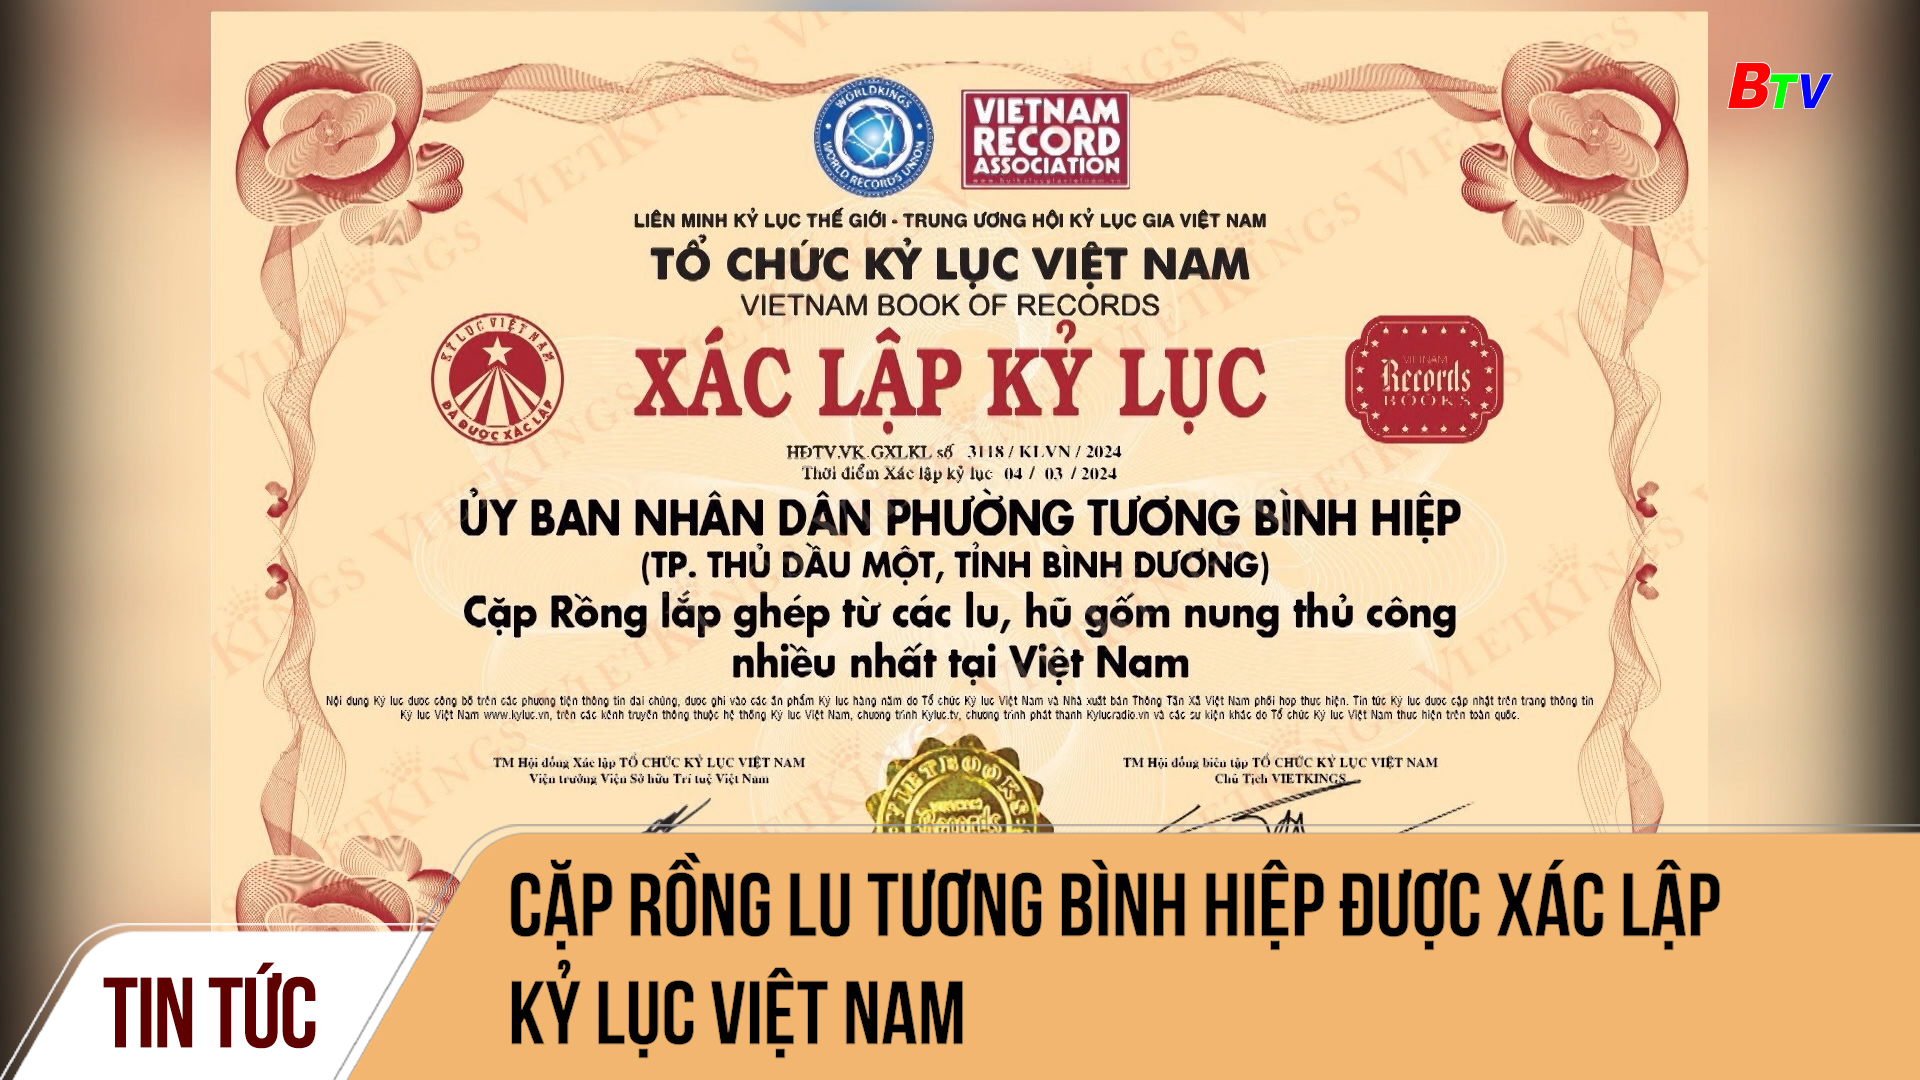 Cặp Rồng lu Tương Bình Hiệp được xác lập kỷ lục Việt Nam